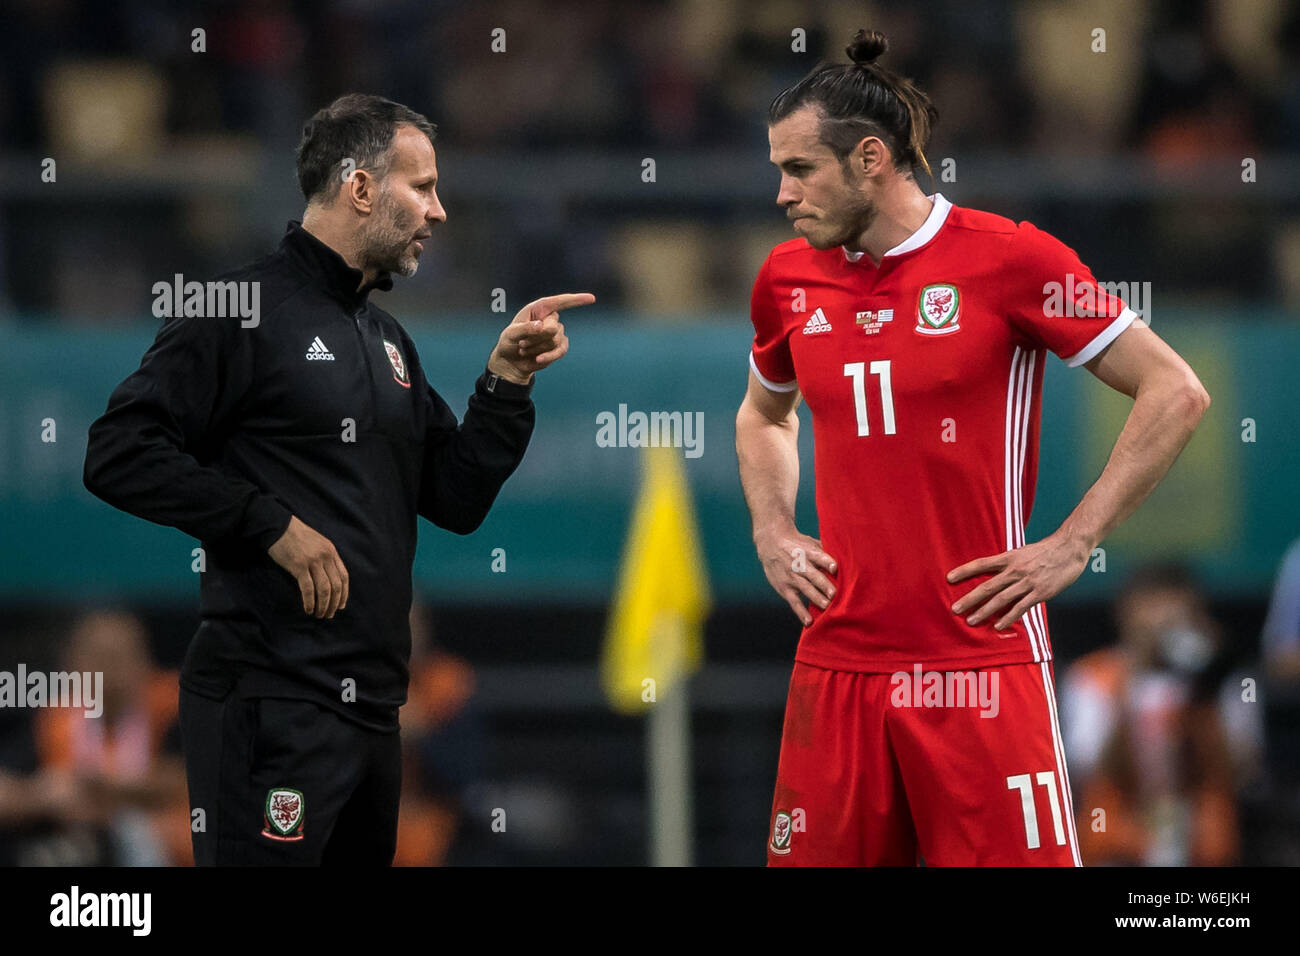 El Head Coach Ryan Giggs, izquierda, del equipo nacional de fútbol de Gales instrucs su jugador Gareth Bale mientras compiten contra el equipo nacional de fútbol de Uruguay Foto de stock